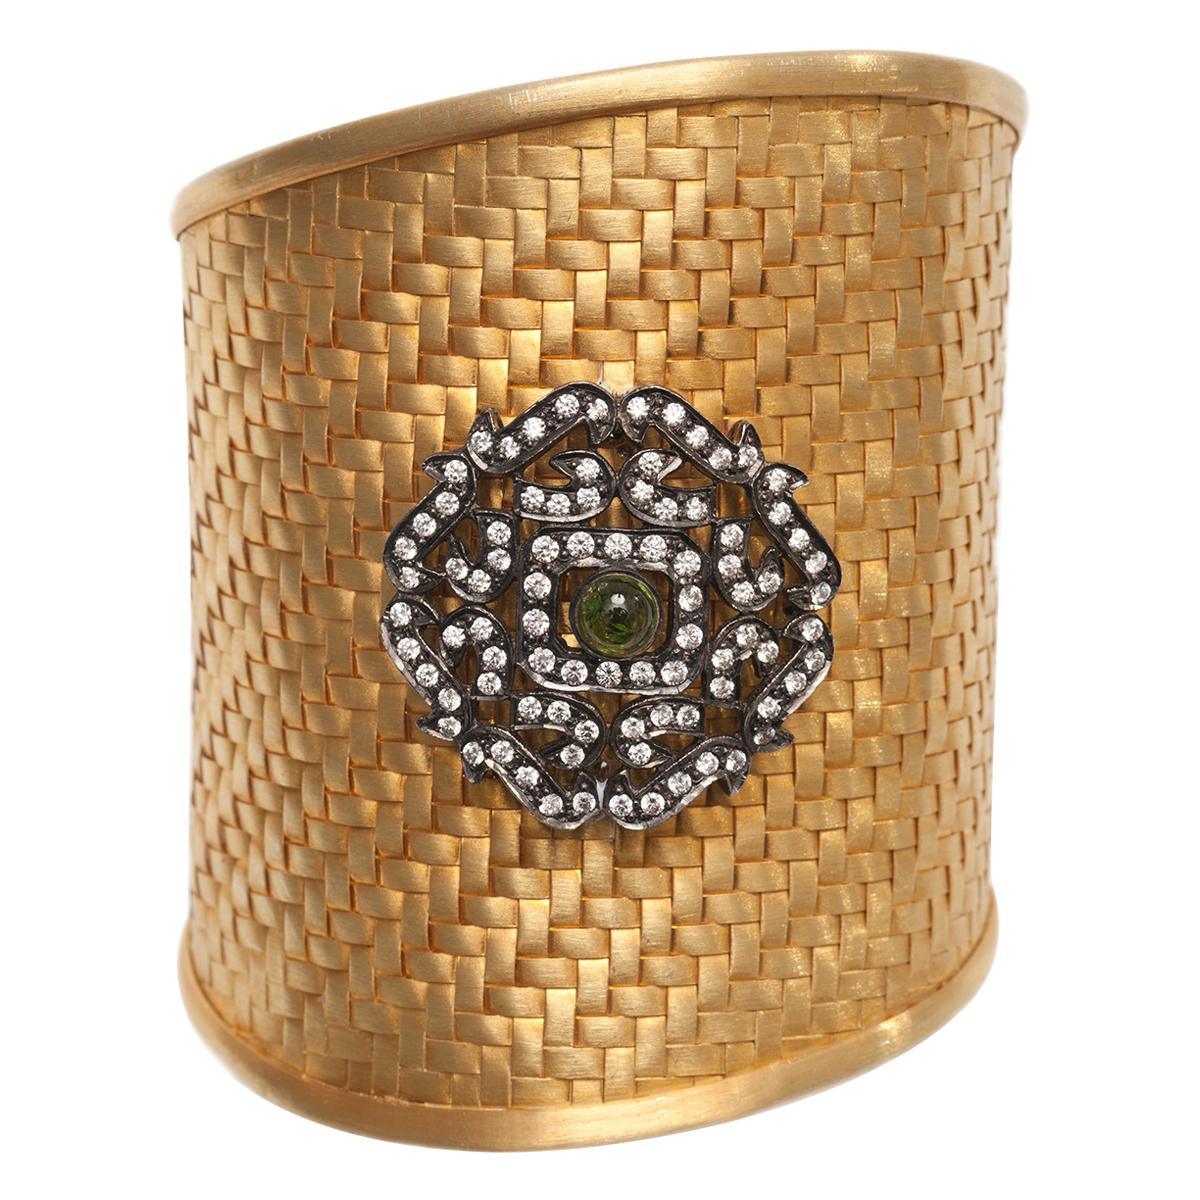 Ammanii Handwoven Vermeil Gold Cuff with Silver Motif